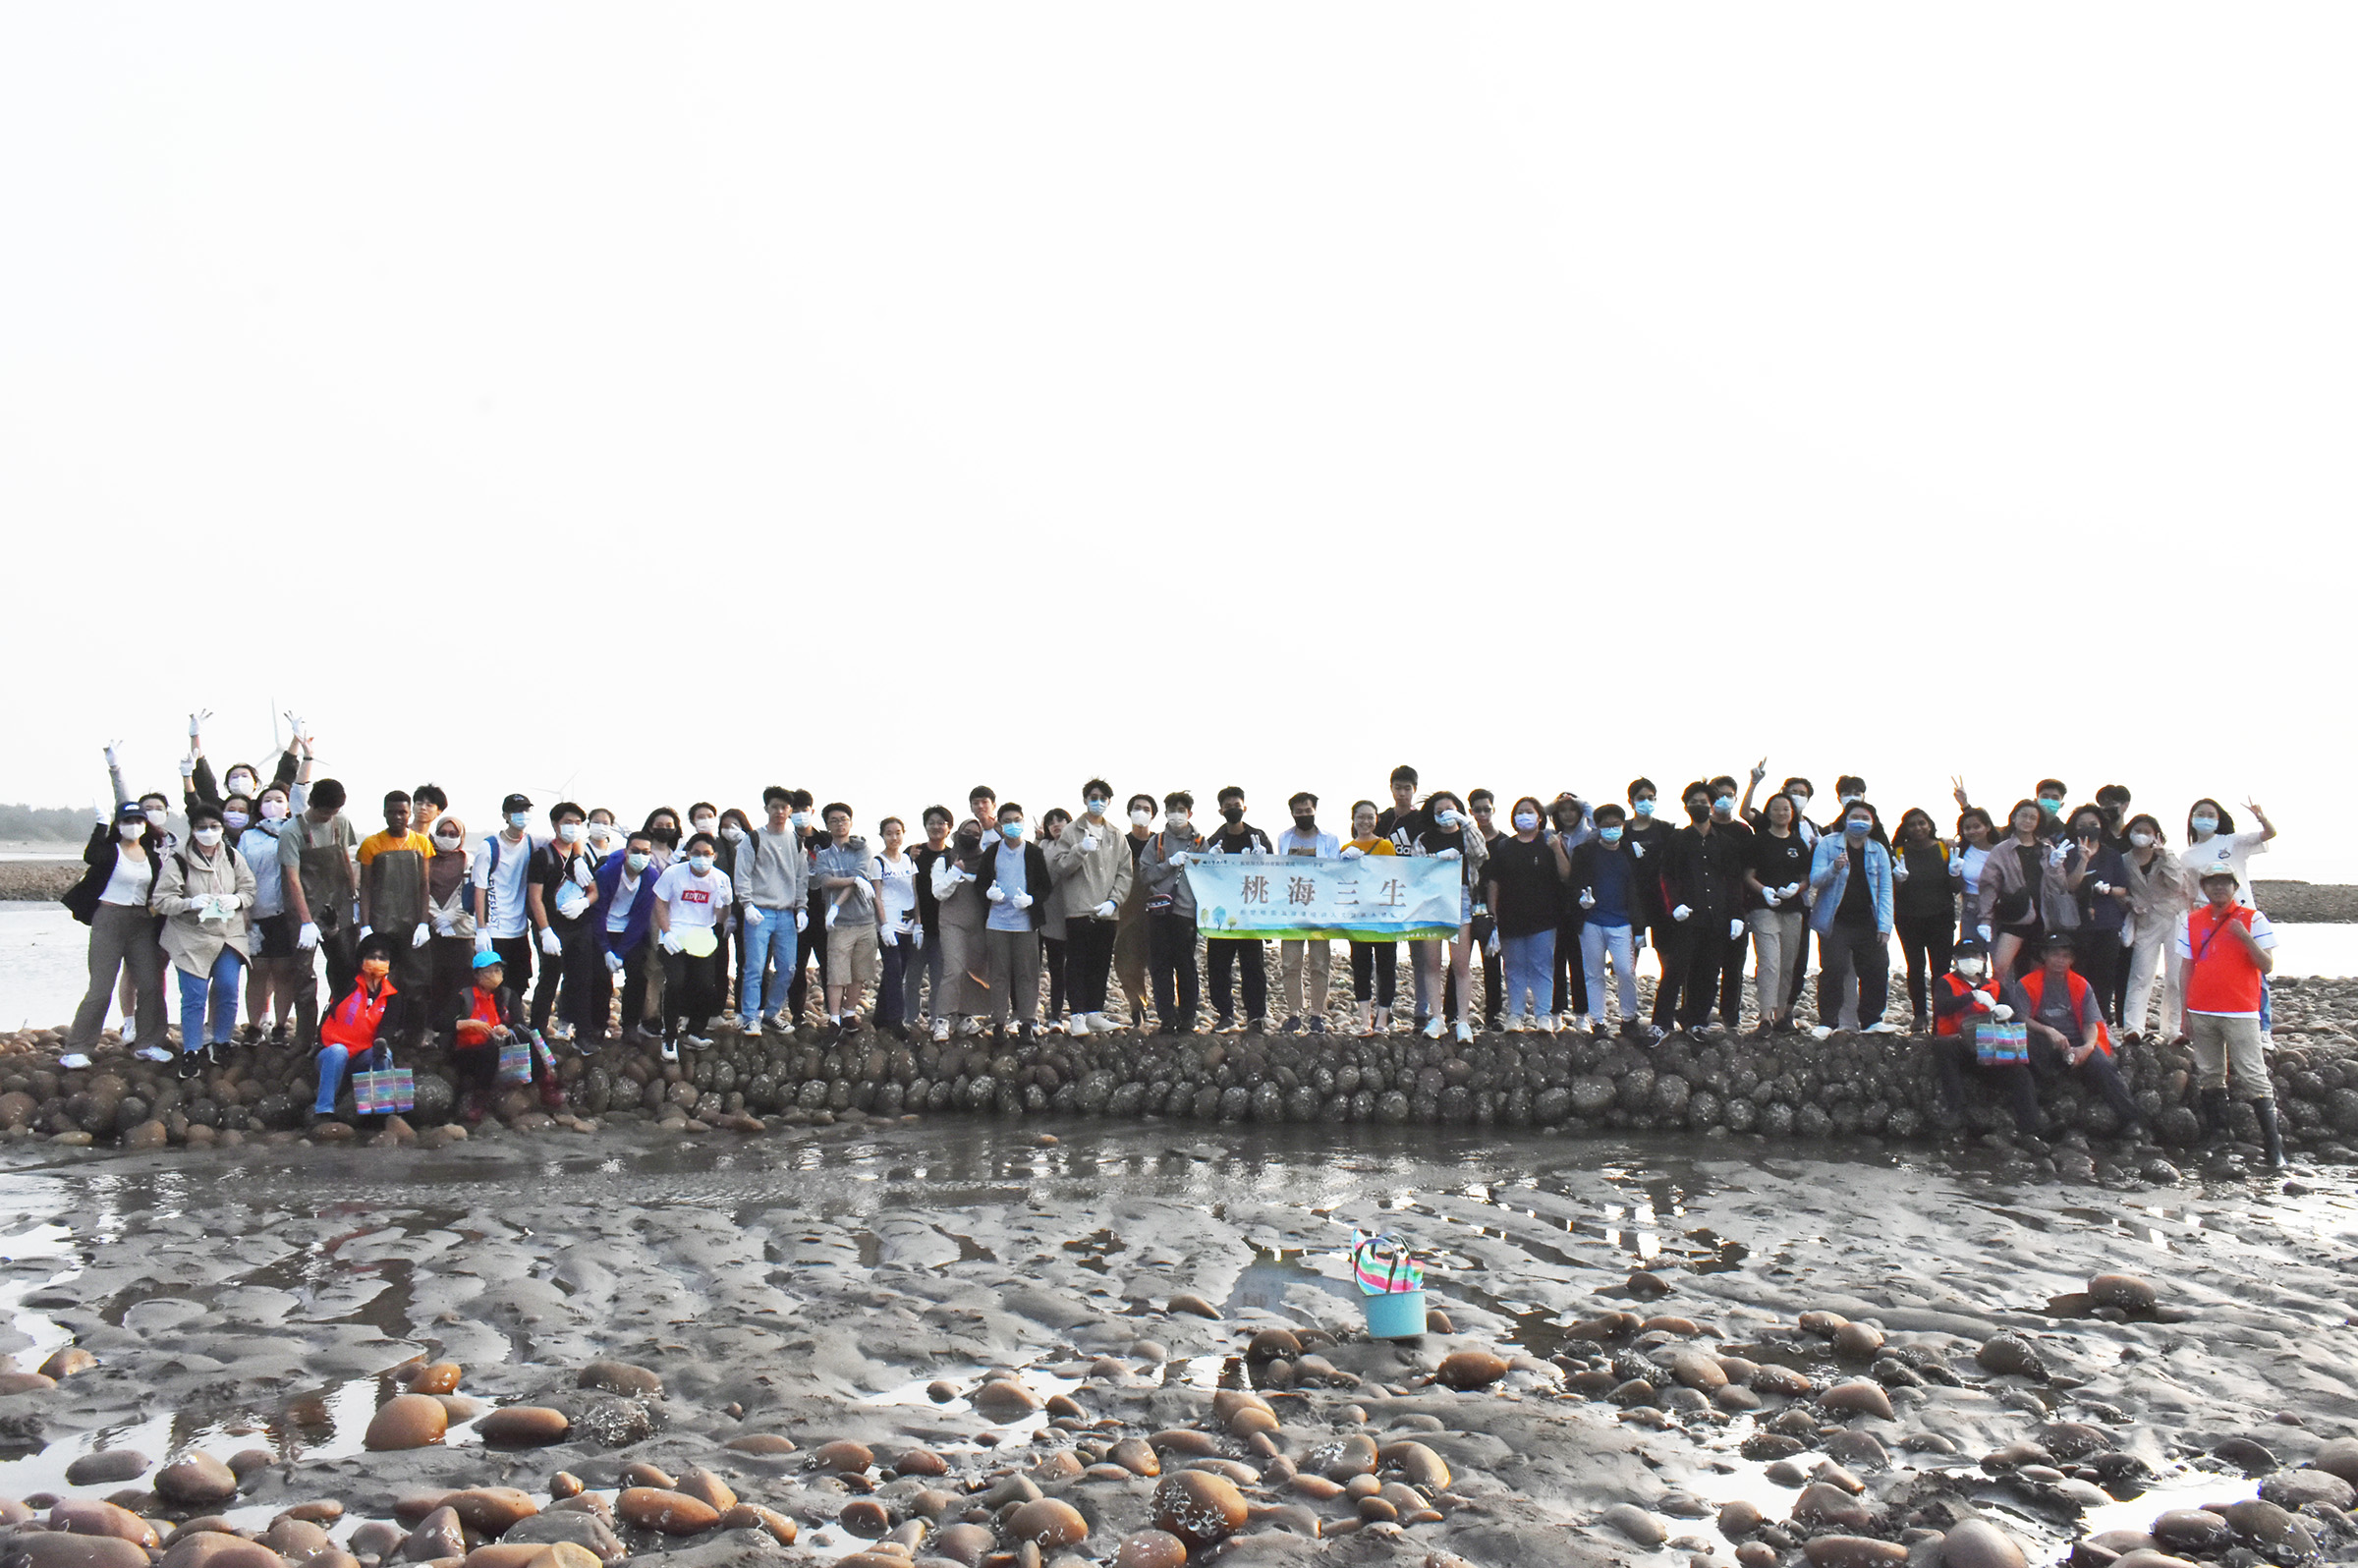 全體師生與外籍生開心於石滬上合影。照片教發中心提供